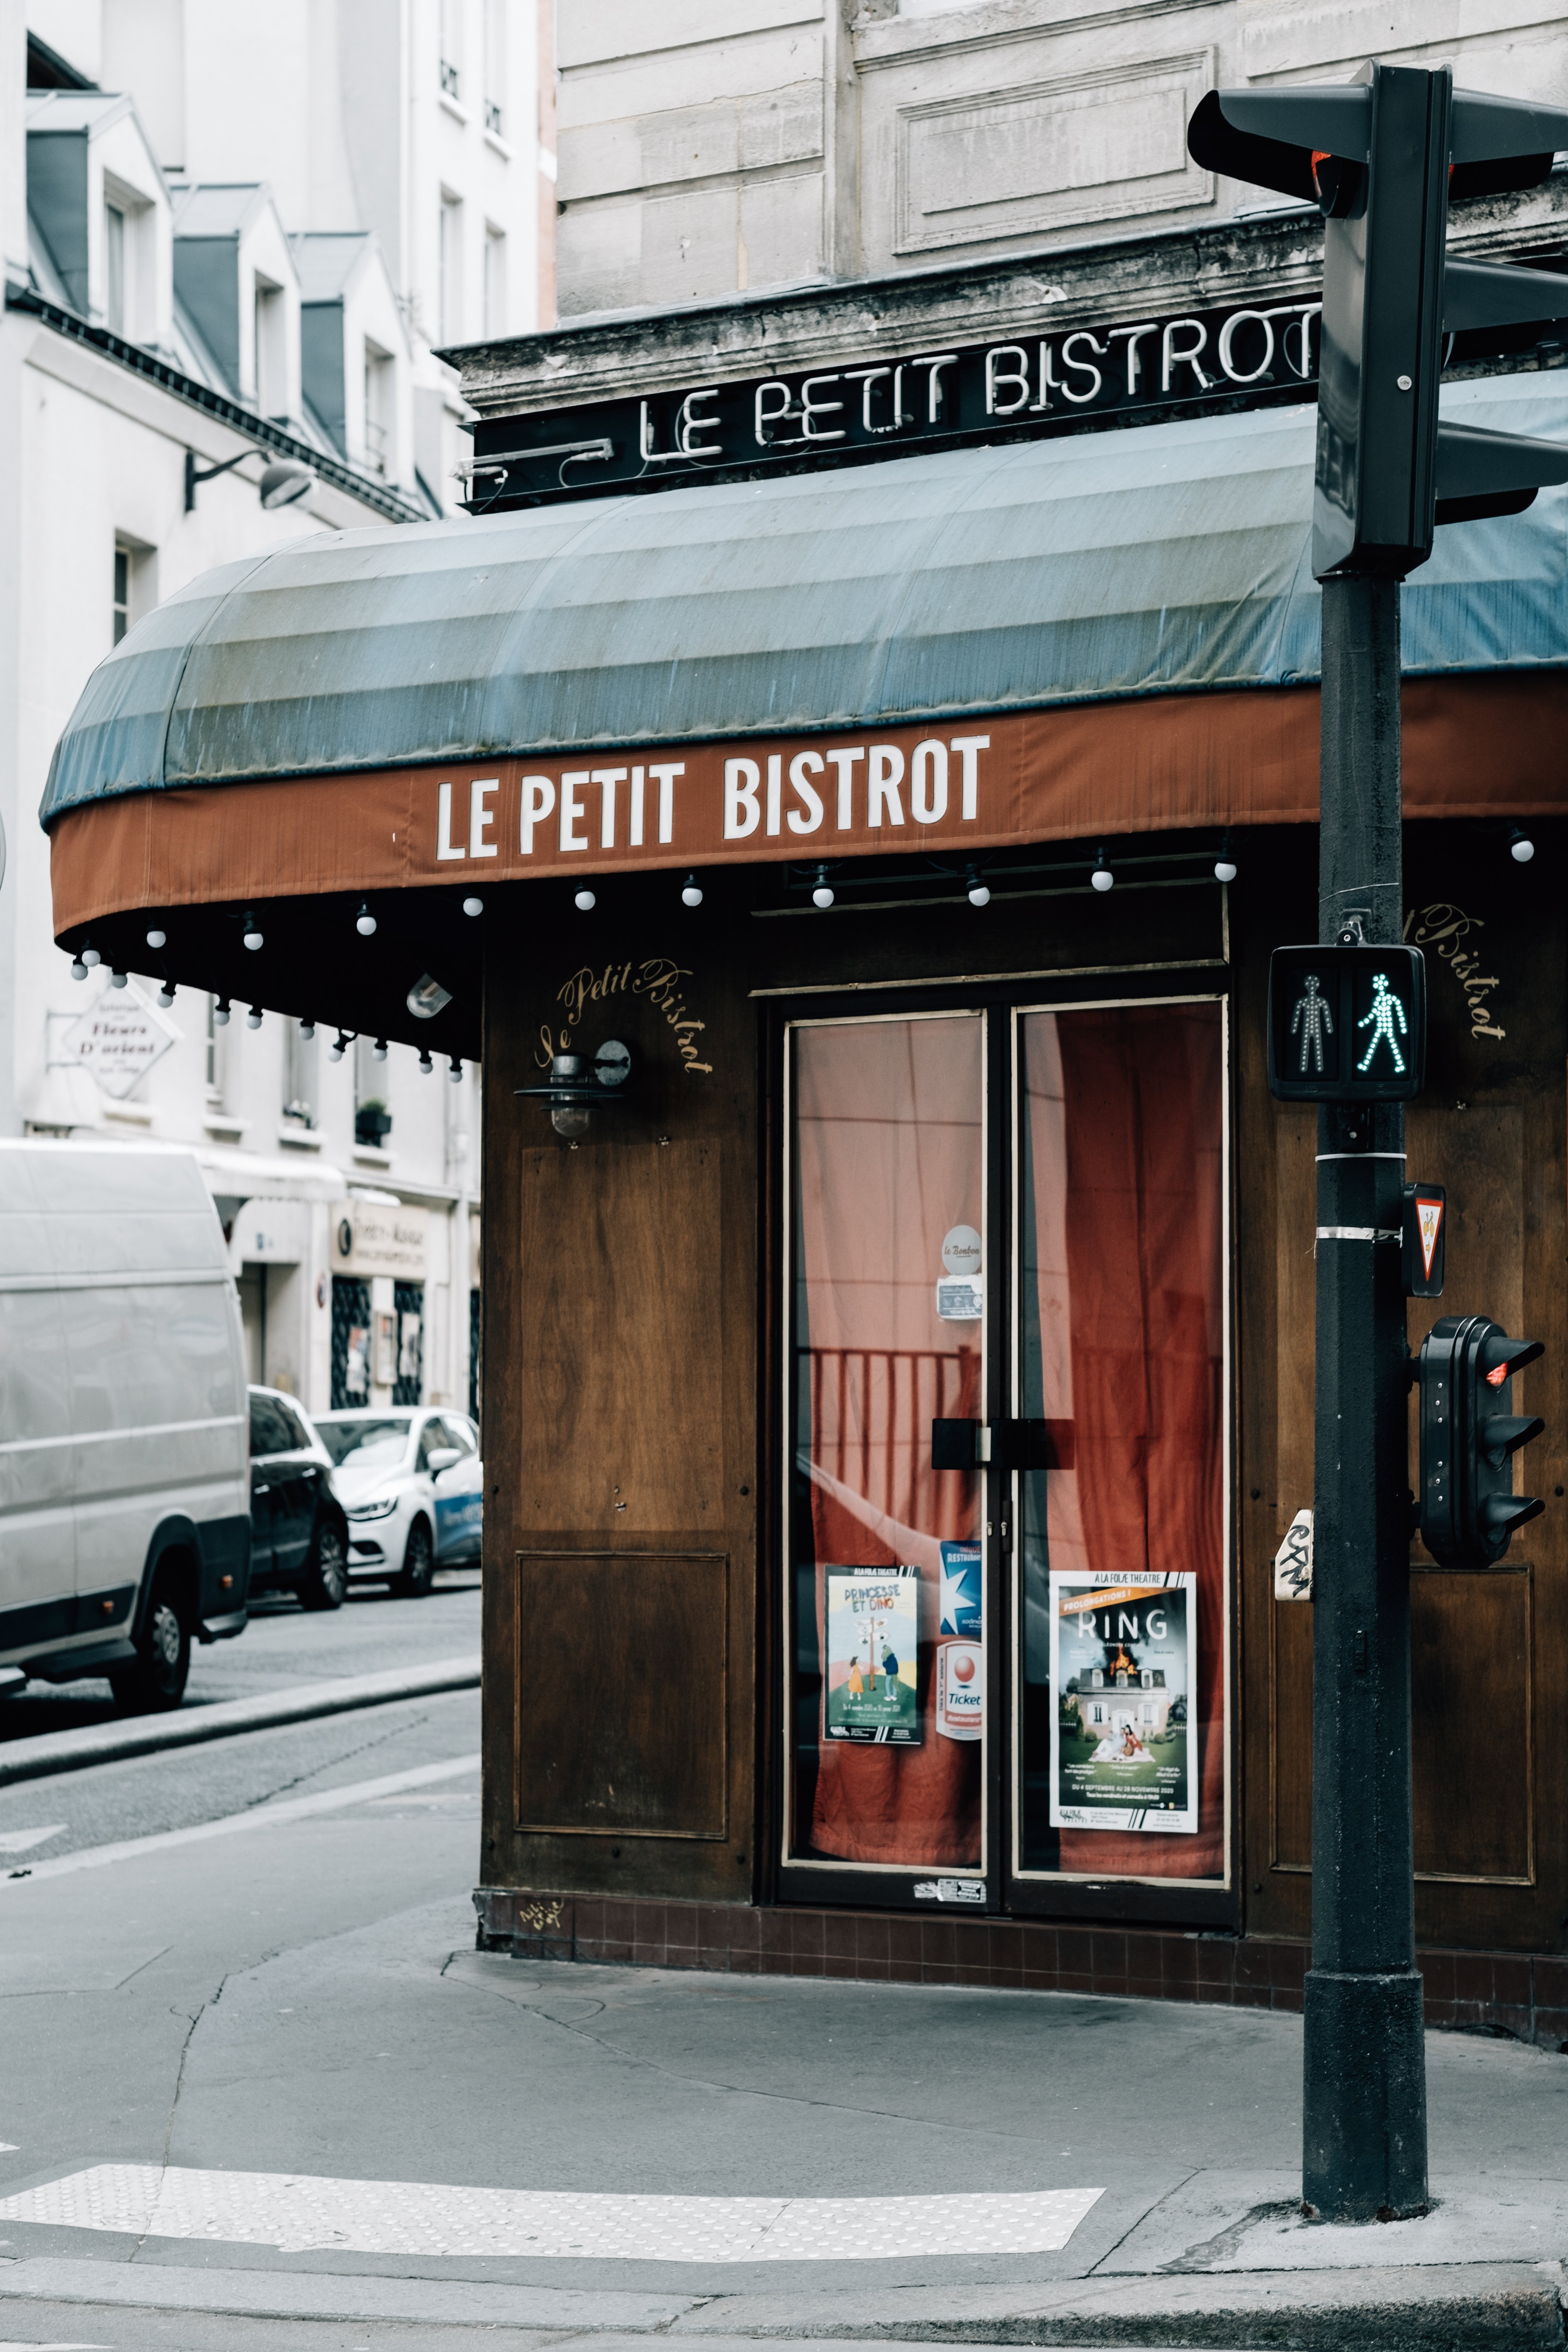 Pintu Masuk Ke Restoran Di Pojok Jalan Foto 